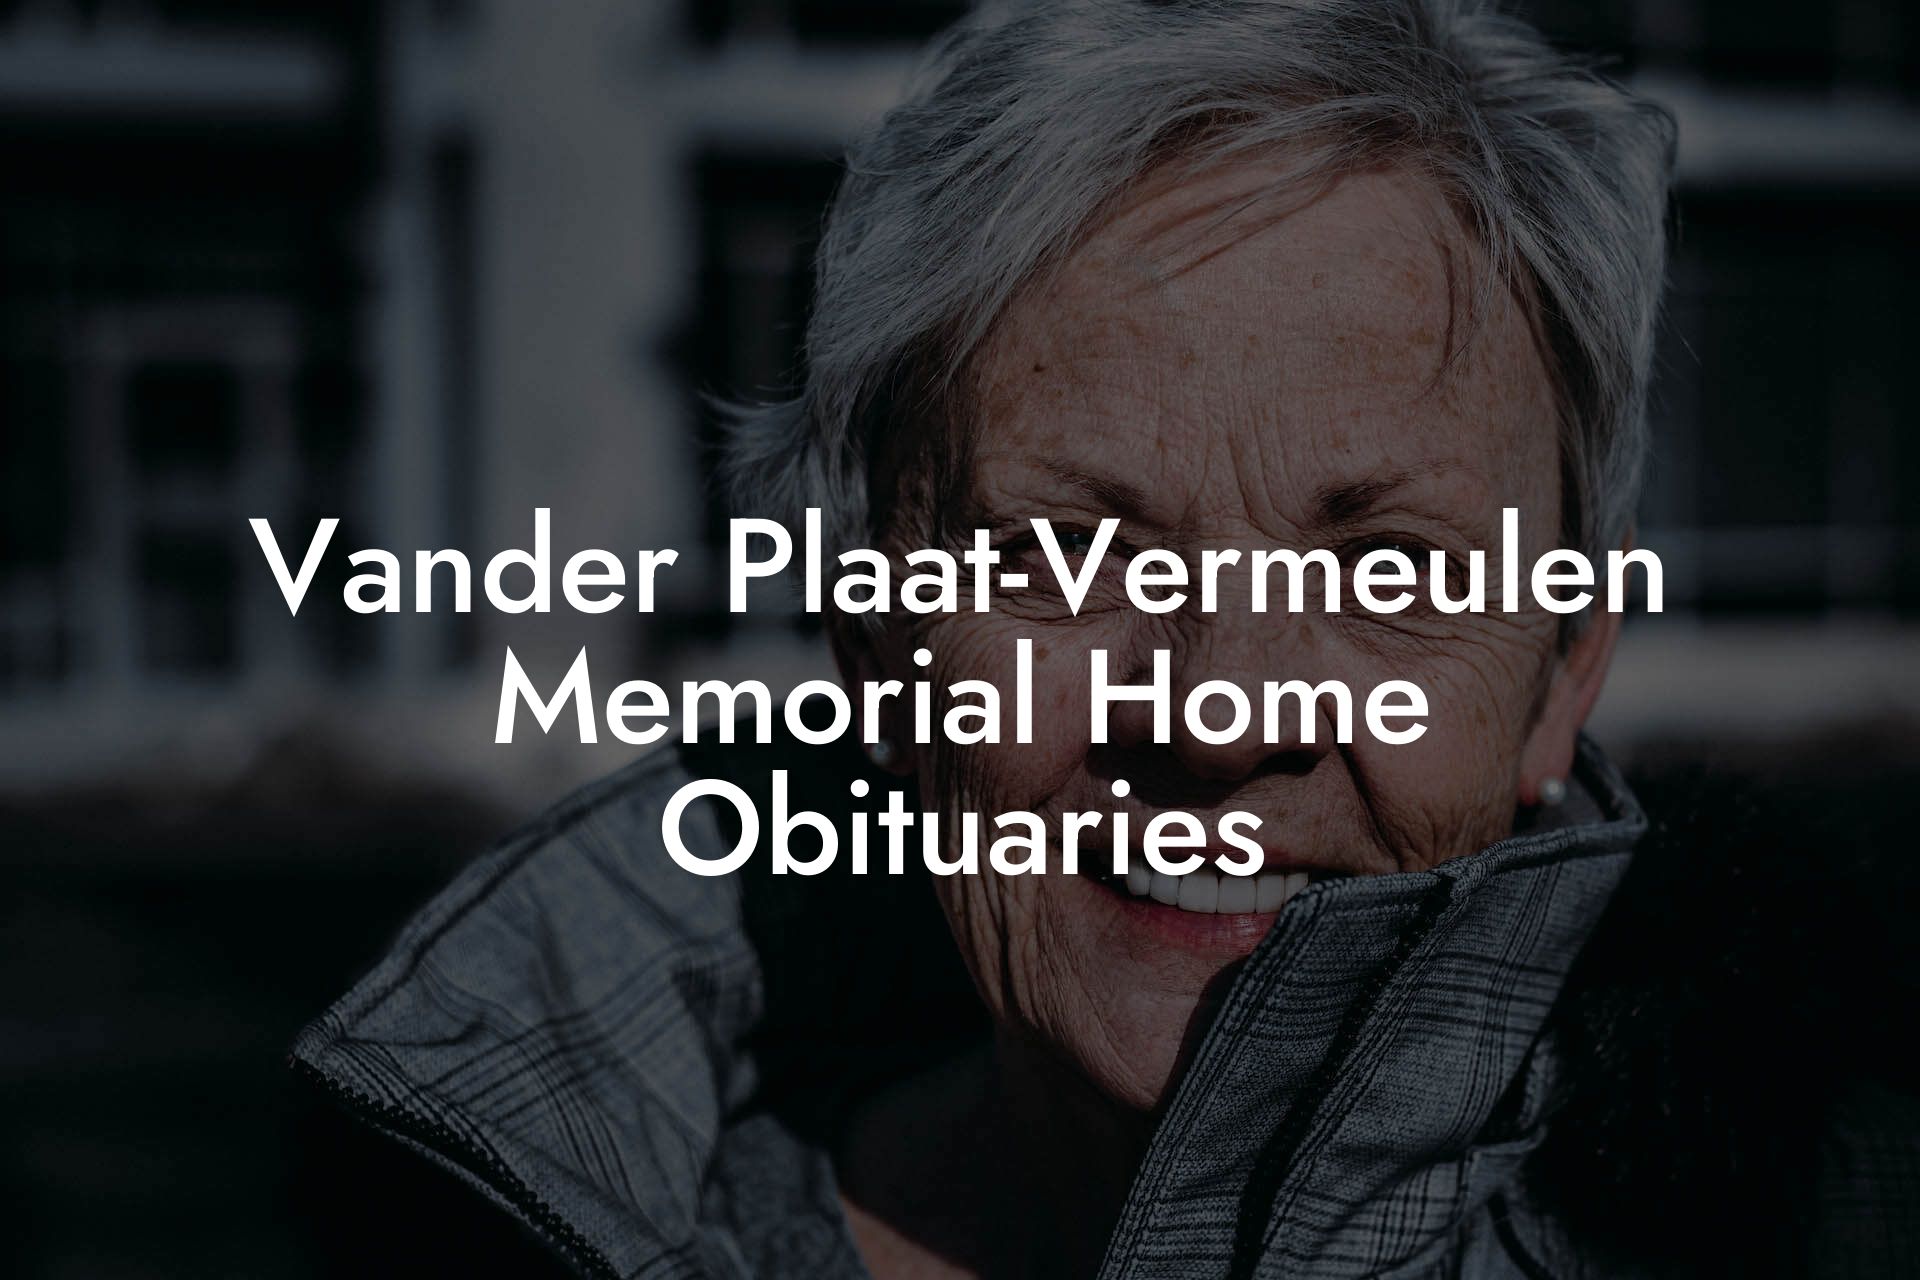 Vander Plaat-Vermeulen Memorial Home Obituaries